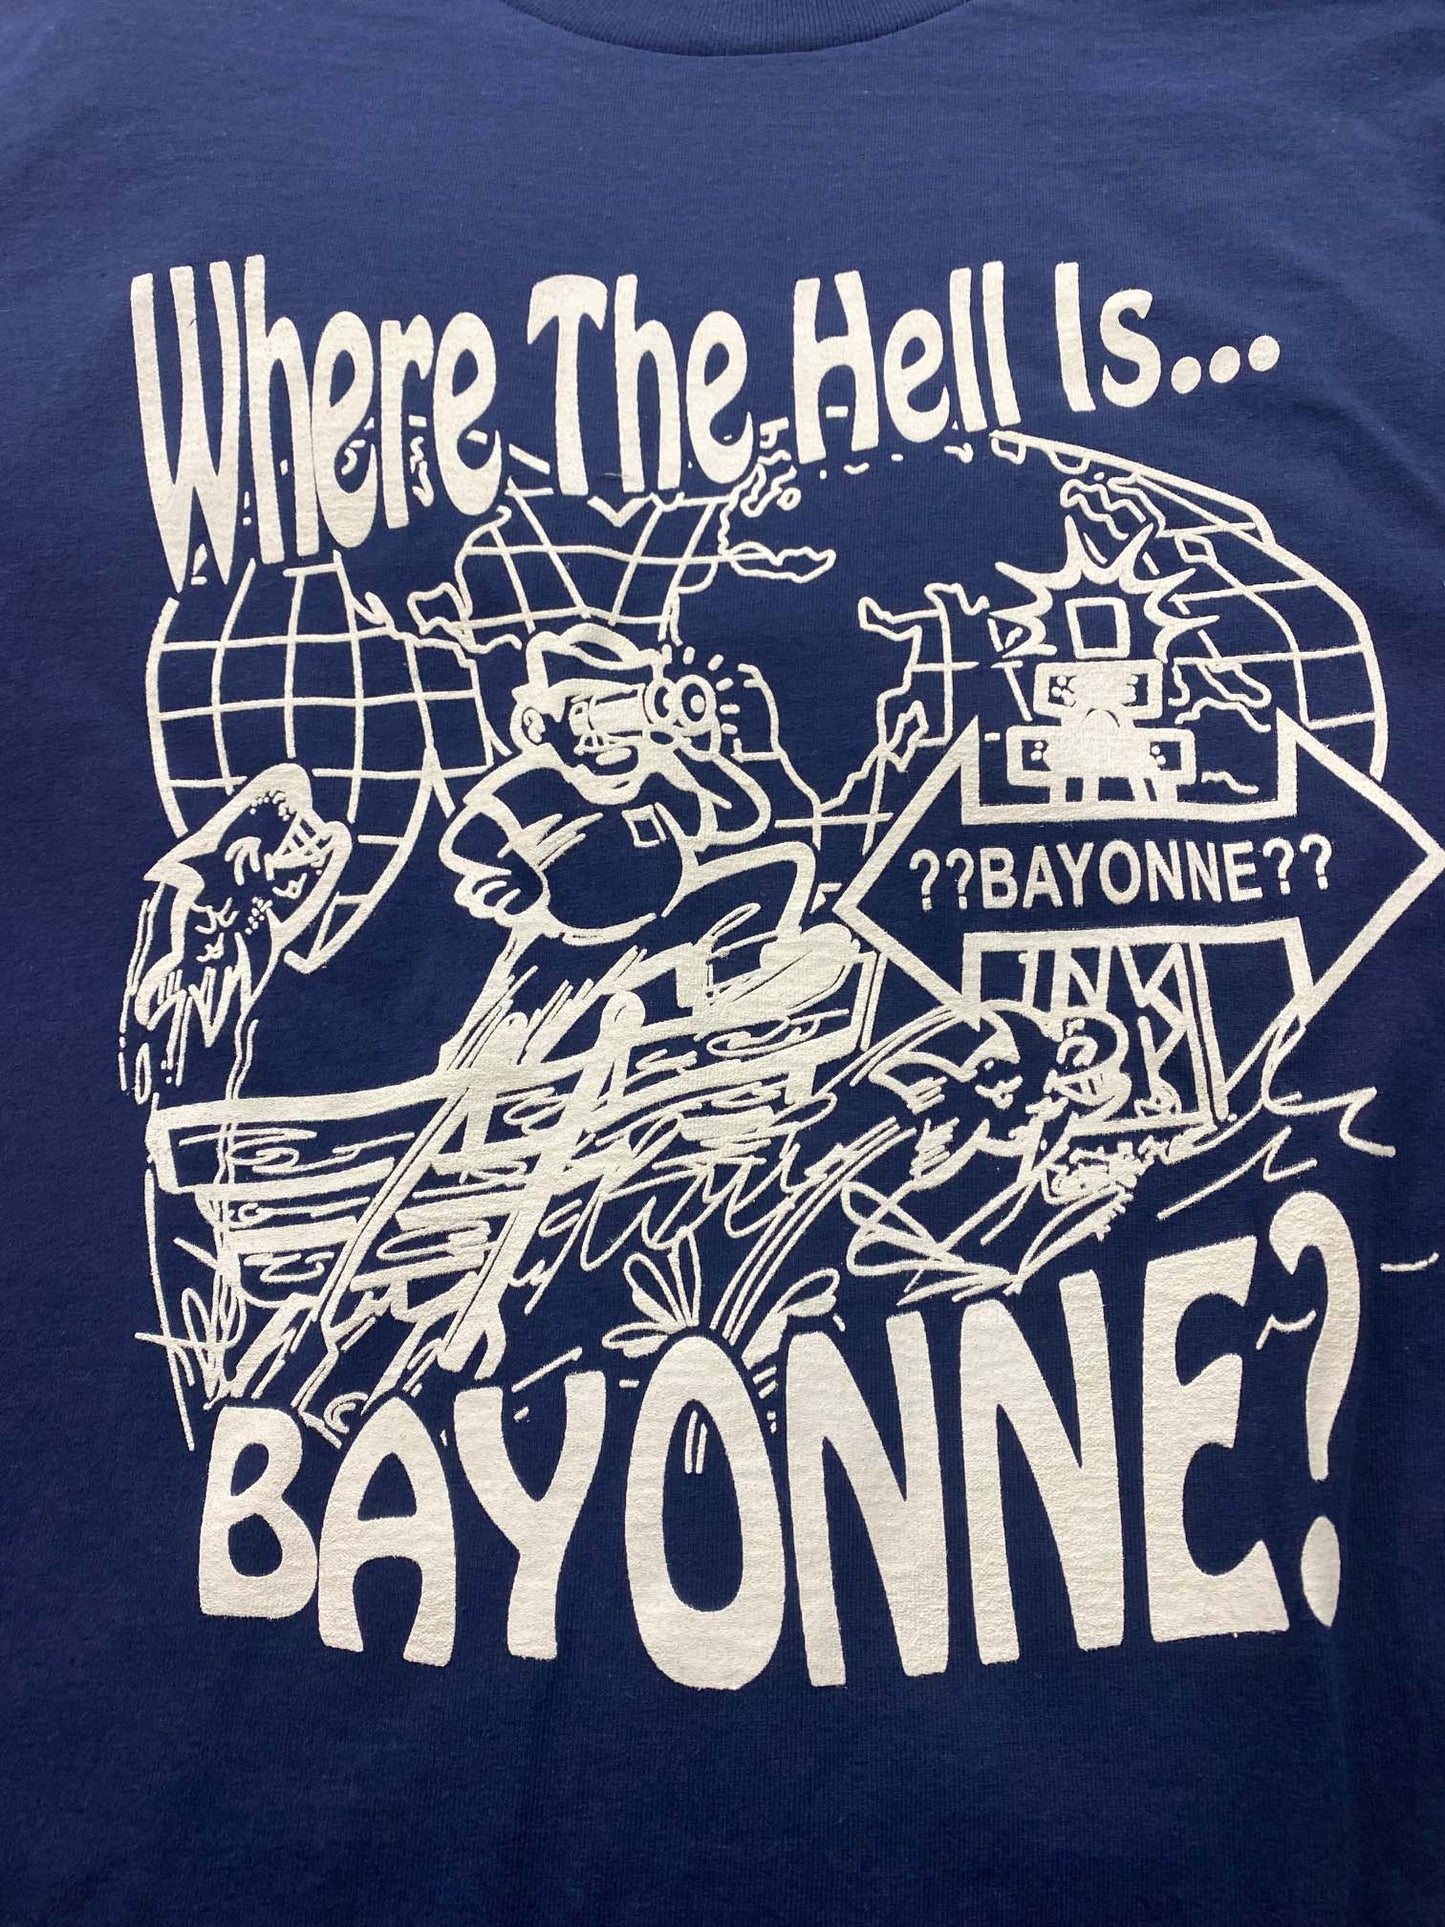 WTH IS BAYONNE ?